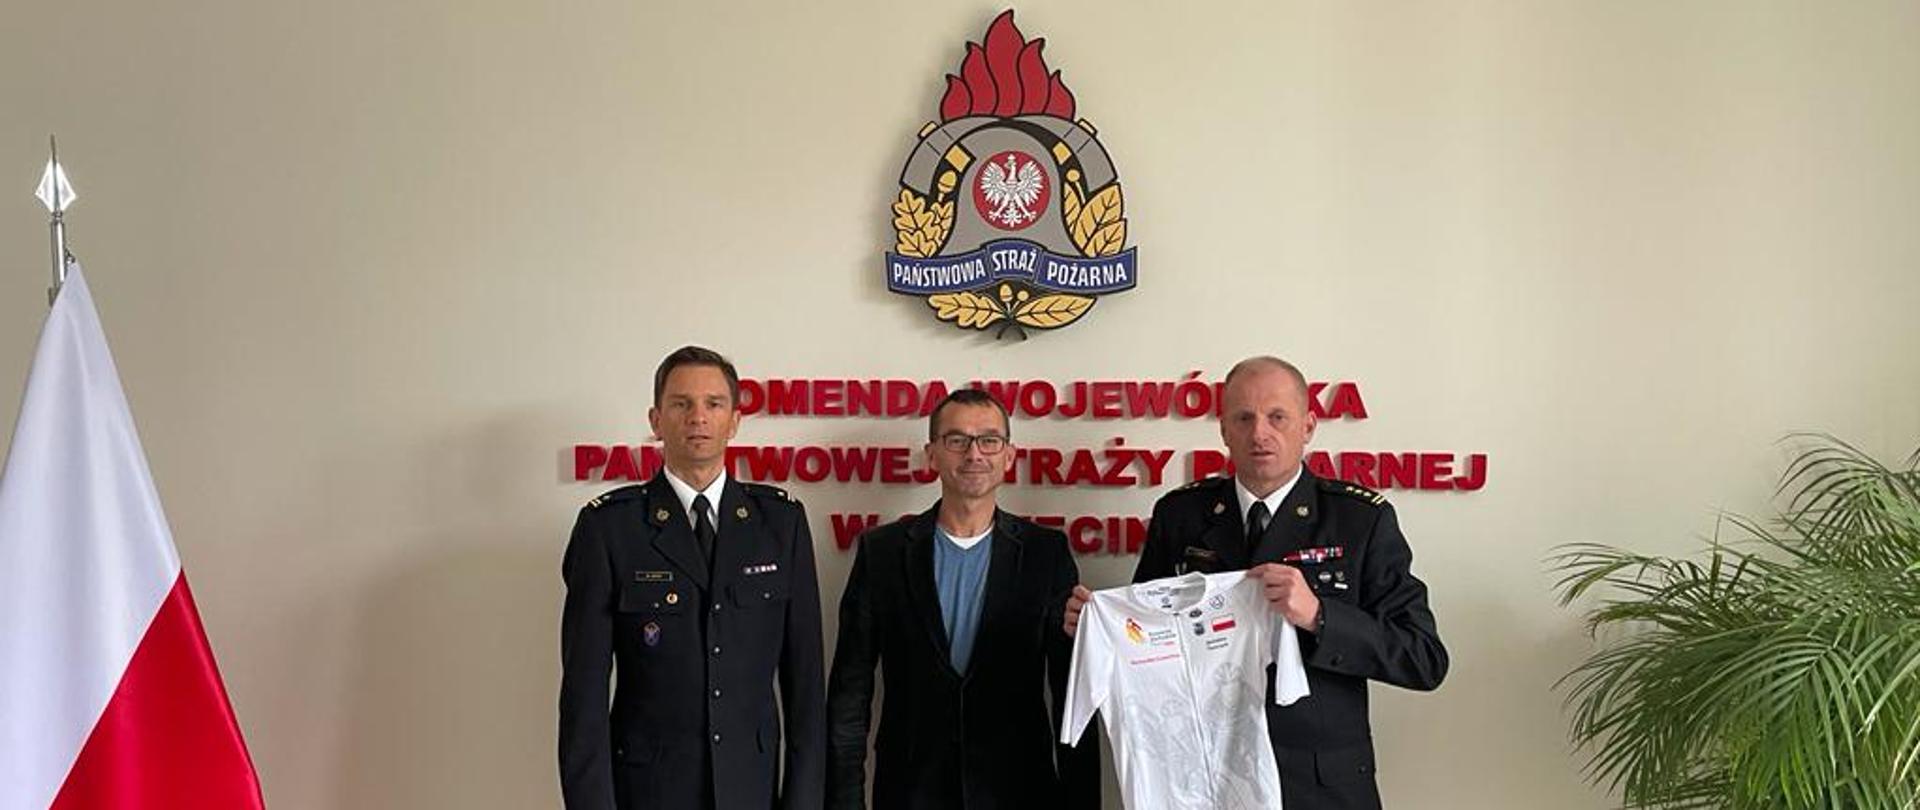 Na zdjęciu trzej mężczyźni na tle logo Państwowej Straży Pożarnej i Flagi Polski. Jeden z nich prezentuje koszulkę kolarską